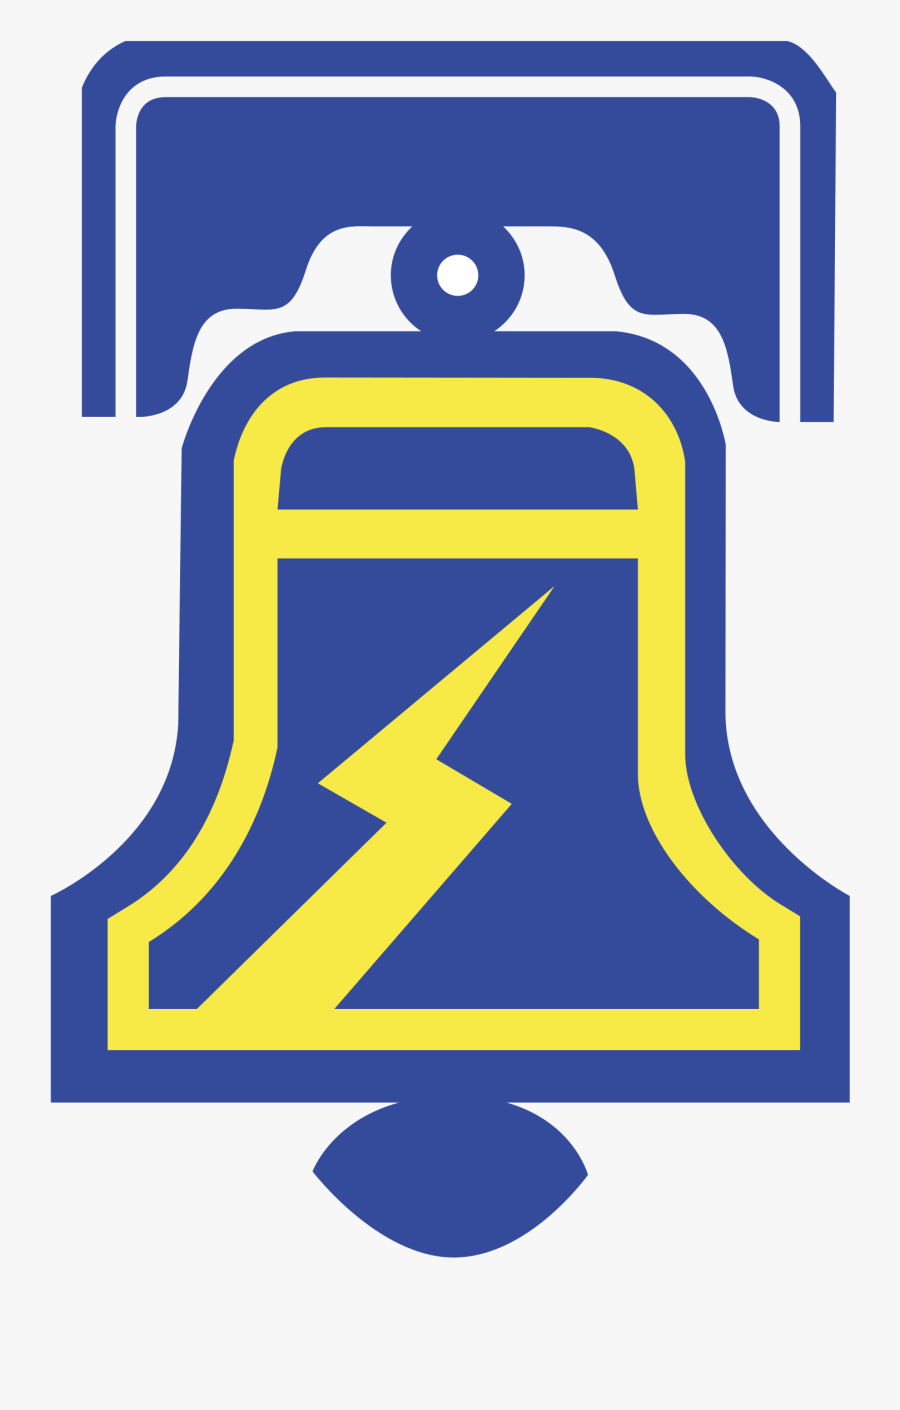 Philadelphia Bell Png - Philadelphia Bell Football Logo, Transparent Clipart